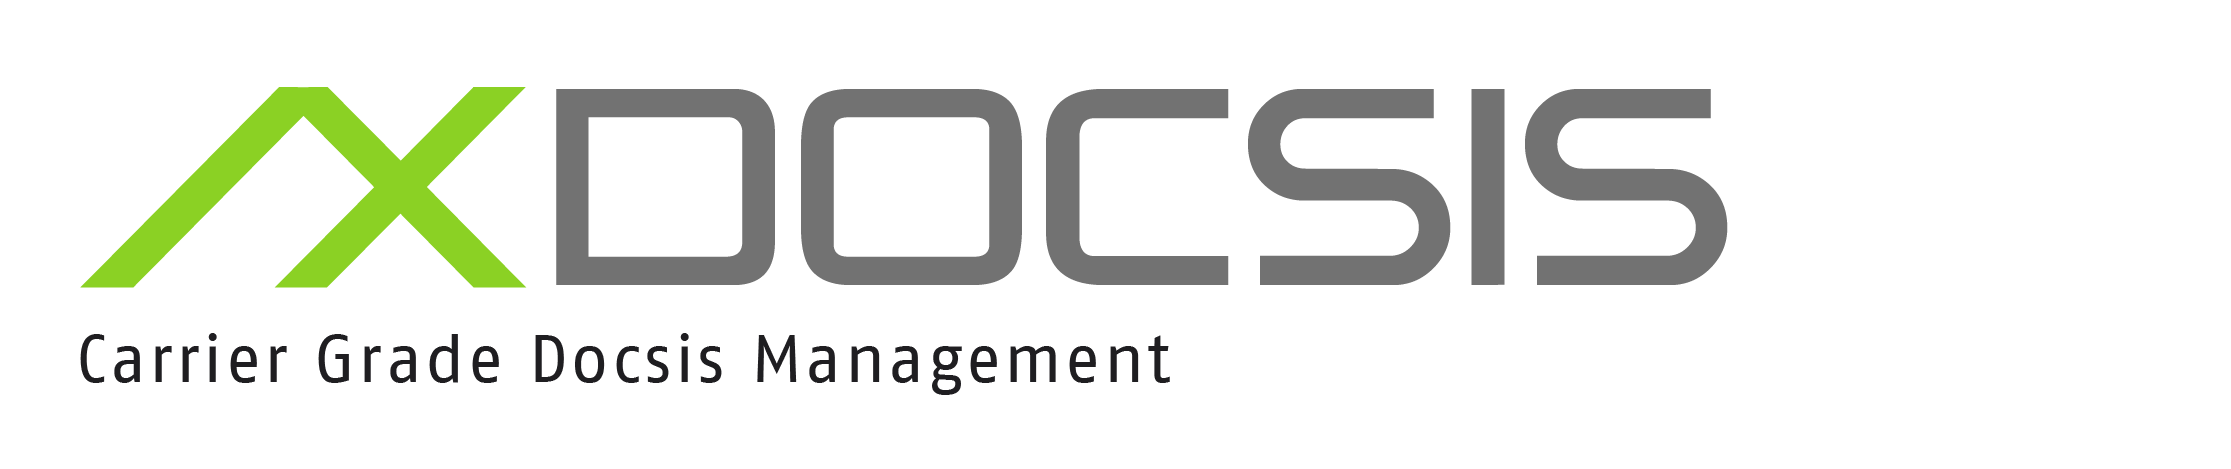 Axiros Logotipo del producto AX DOCSIS